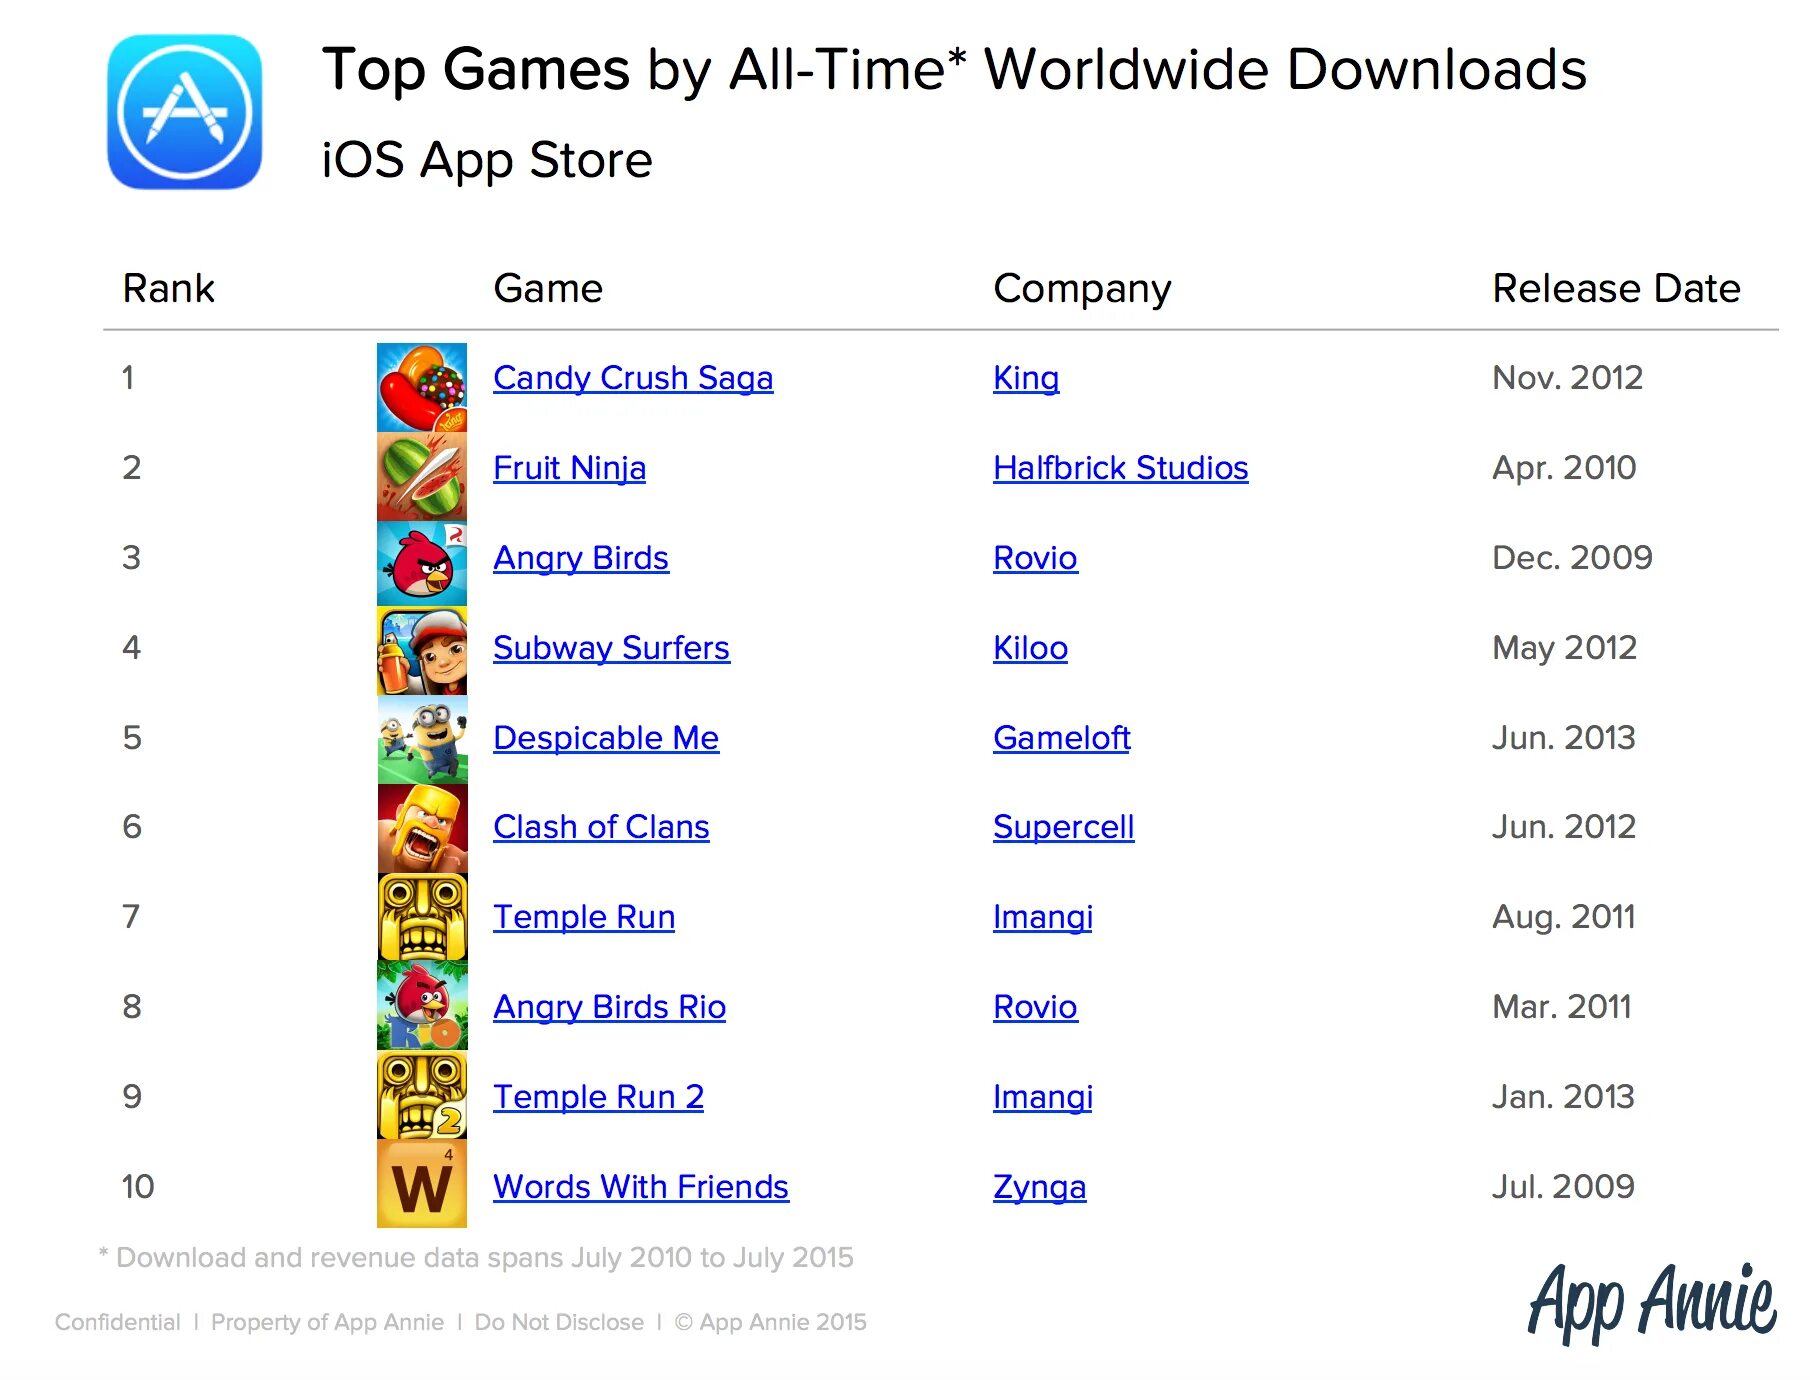 Рейтинг игр в мире. Список самых популярных игр. Популярные игры список. Список самых популярных мобильных игр. Какая игра на 1 месте.